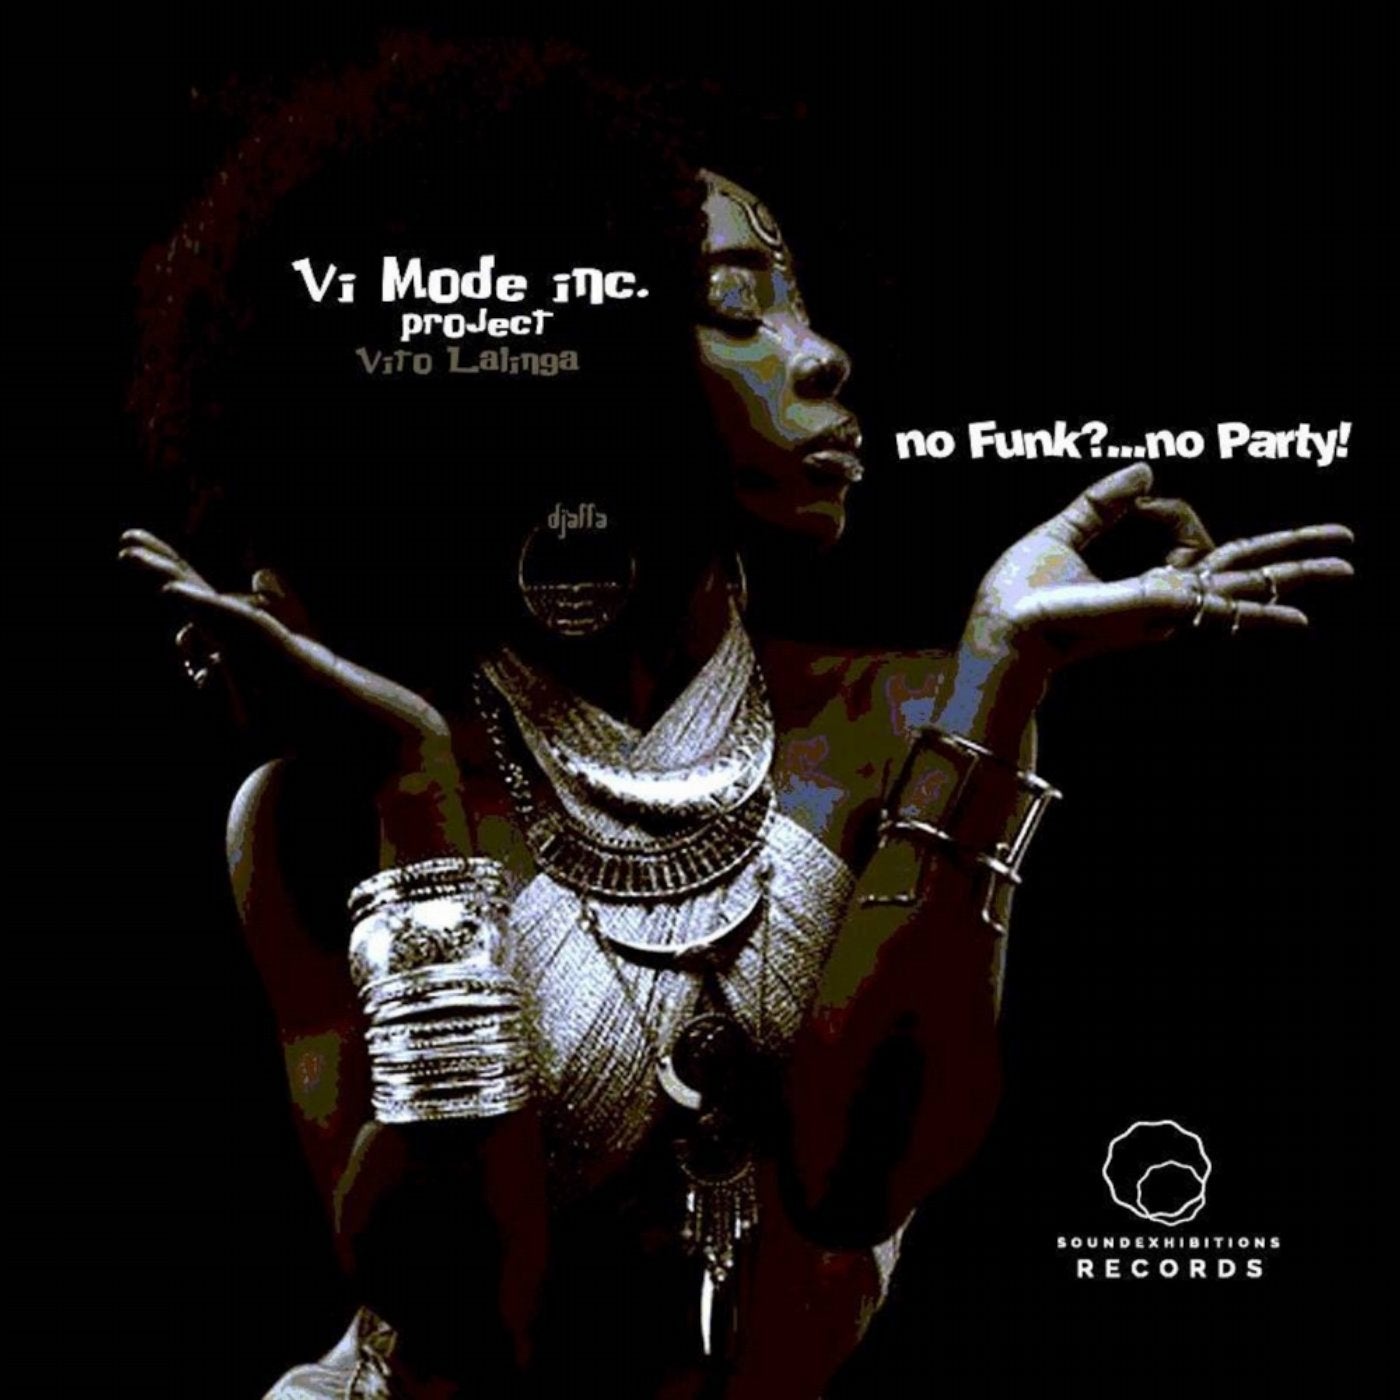 No Funk No Party